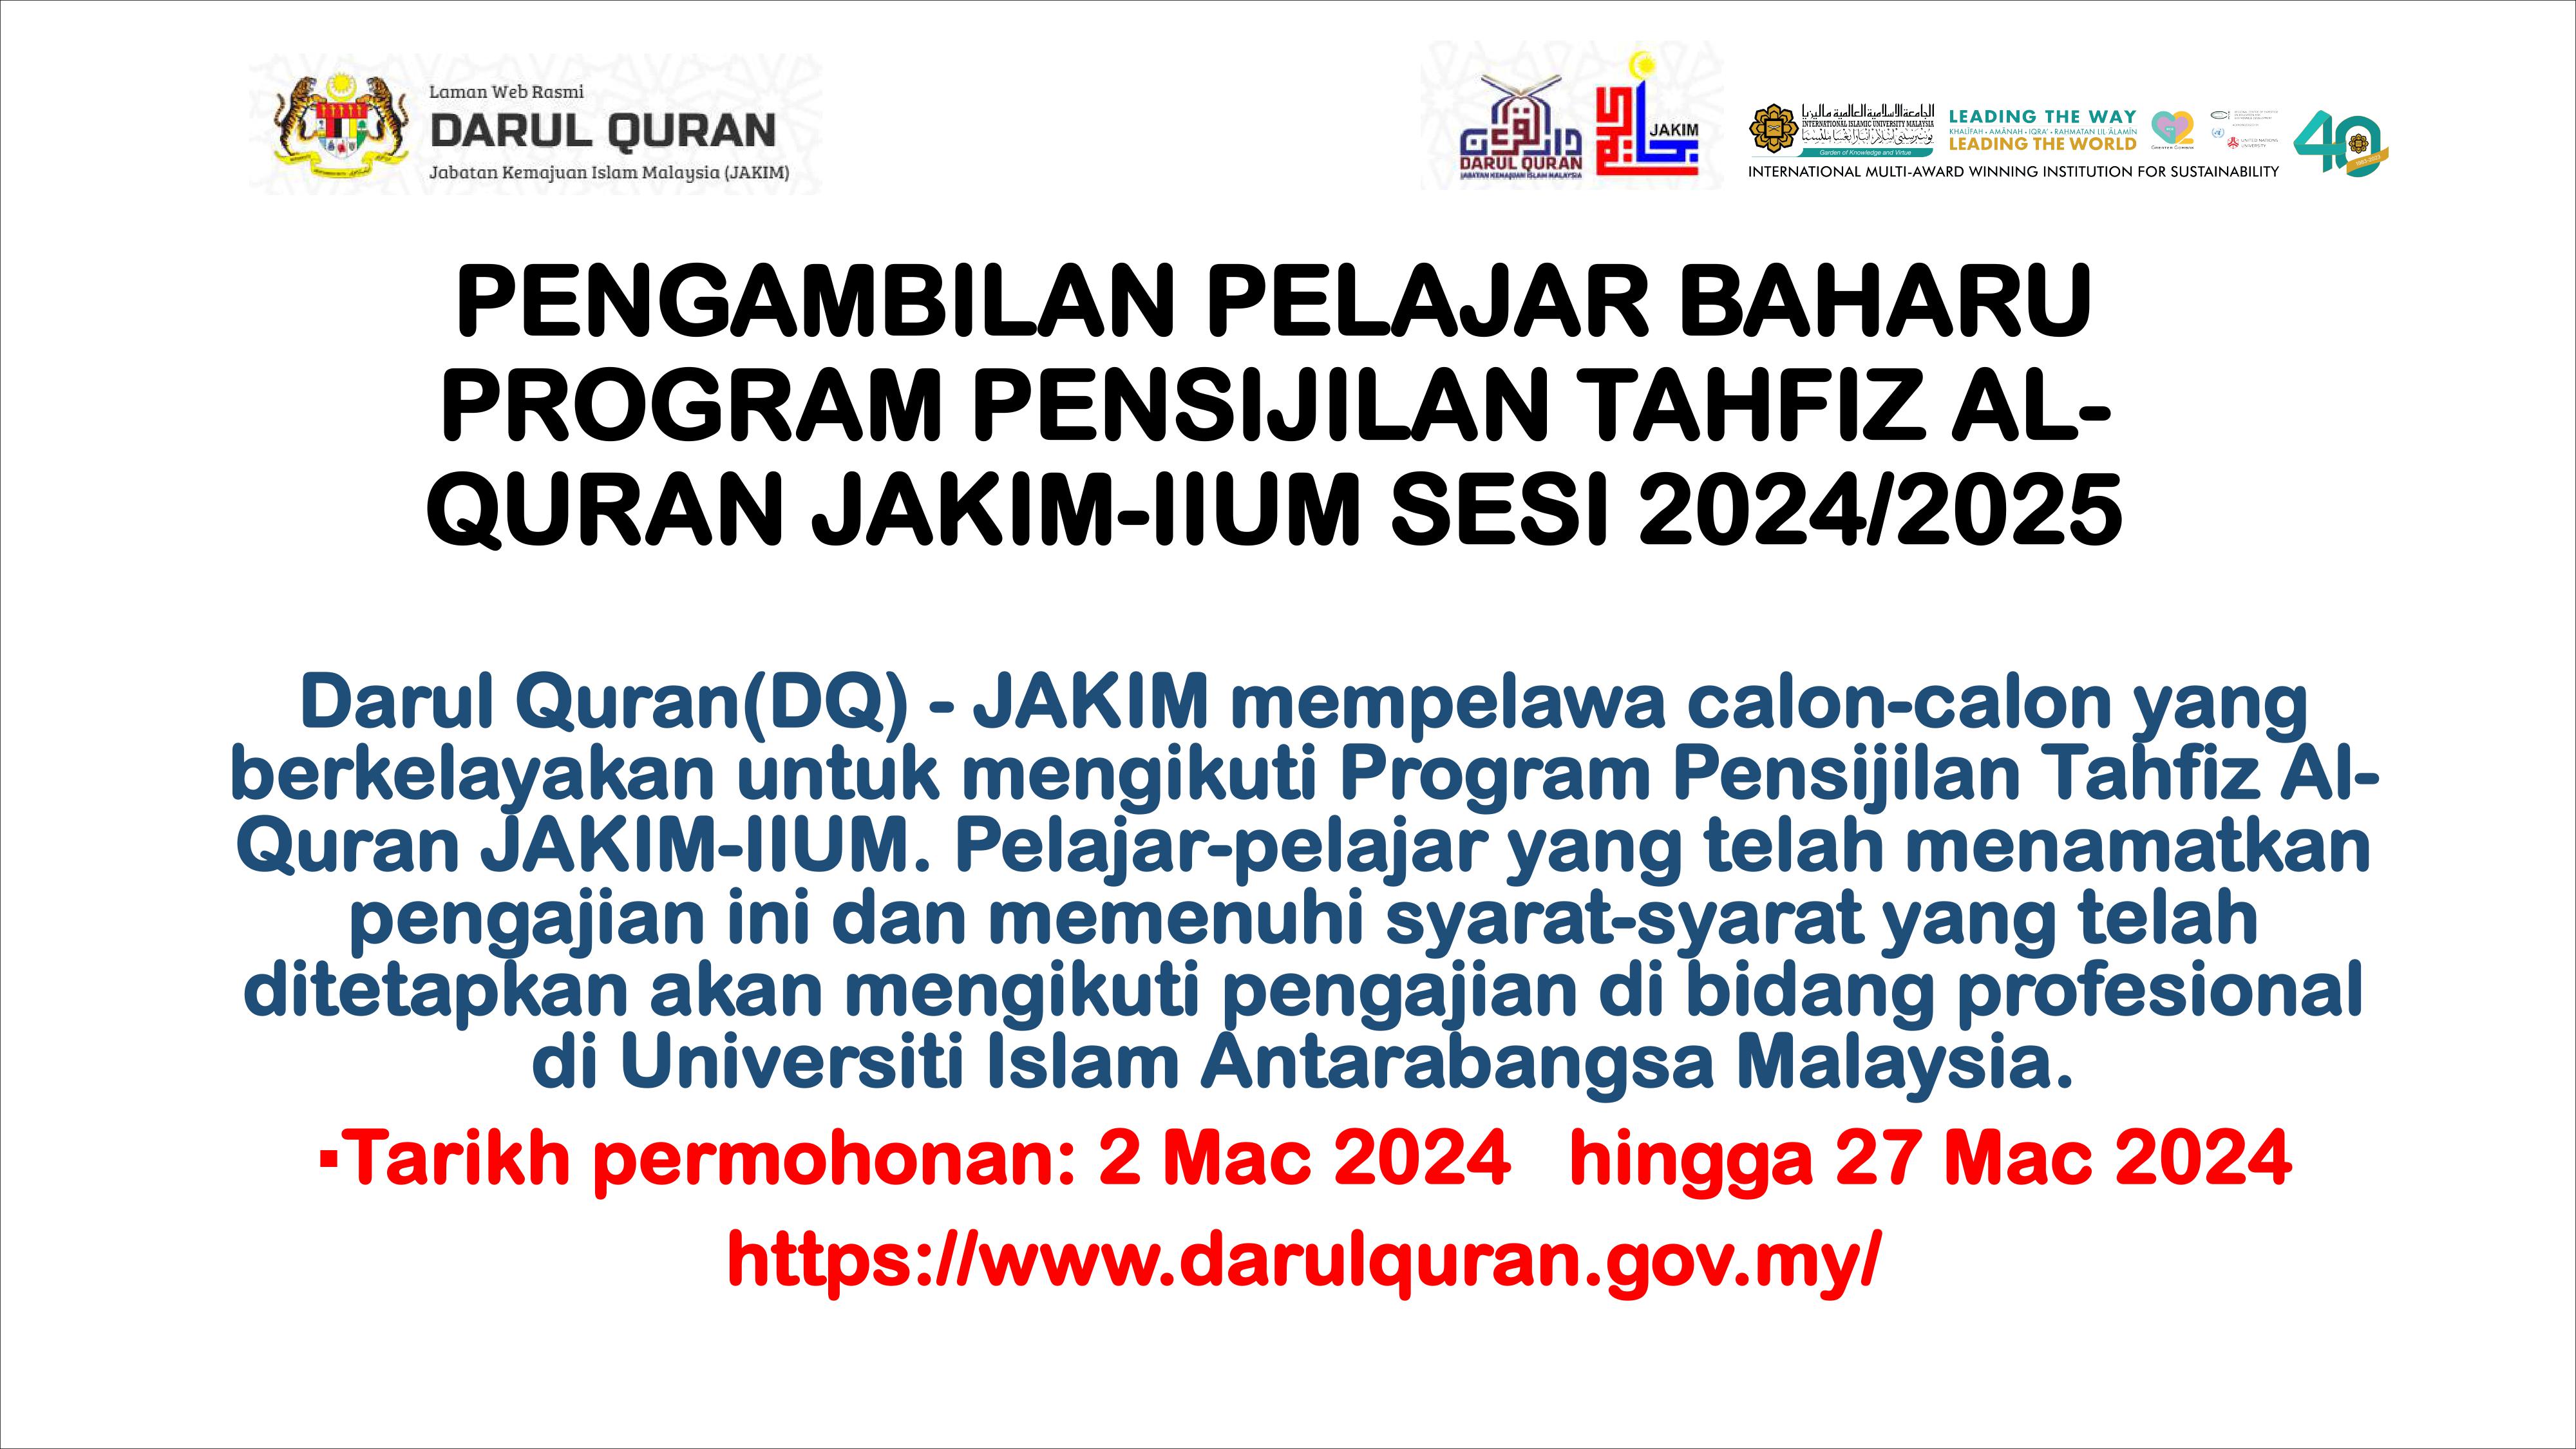 PENGAMBILAN PELAJAR BAHARU PROGRAM PENSIJILAN TAHFIZ ALQURAN JAKIM-IIUM SESI 2024/2025